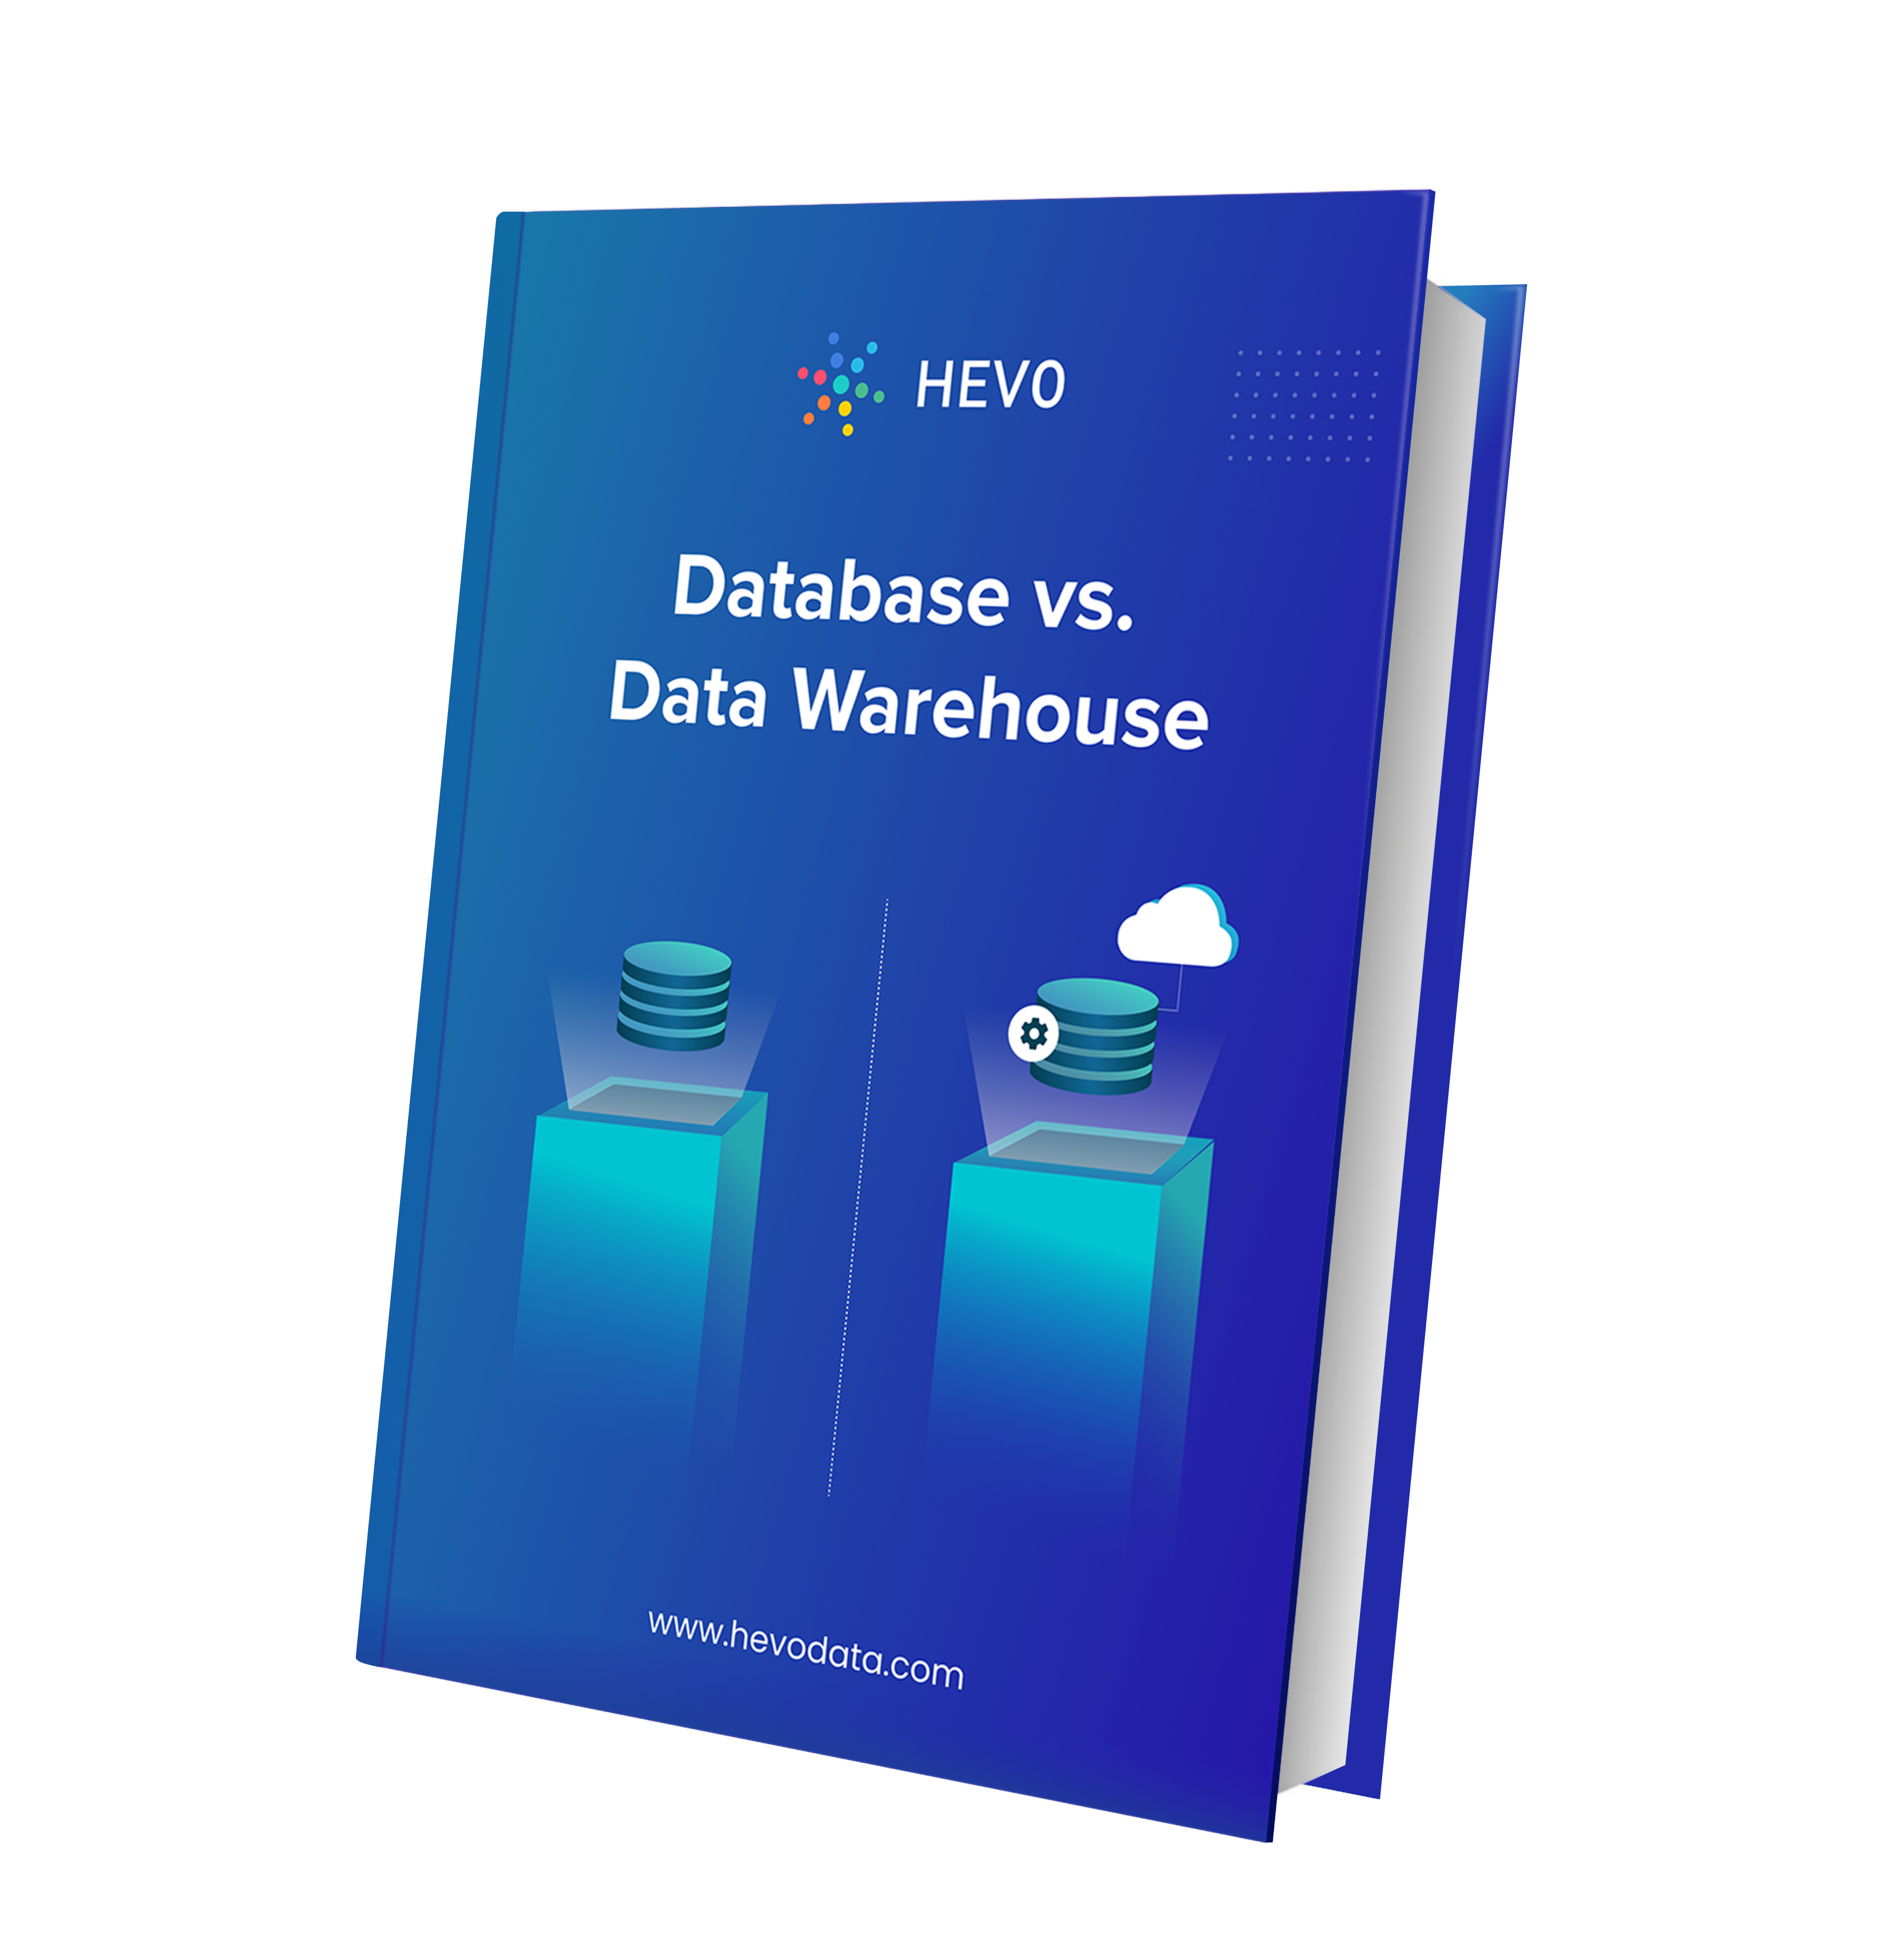 Download the Whitepaper on Database vs Data Warehouse